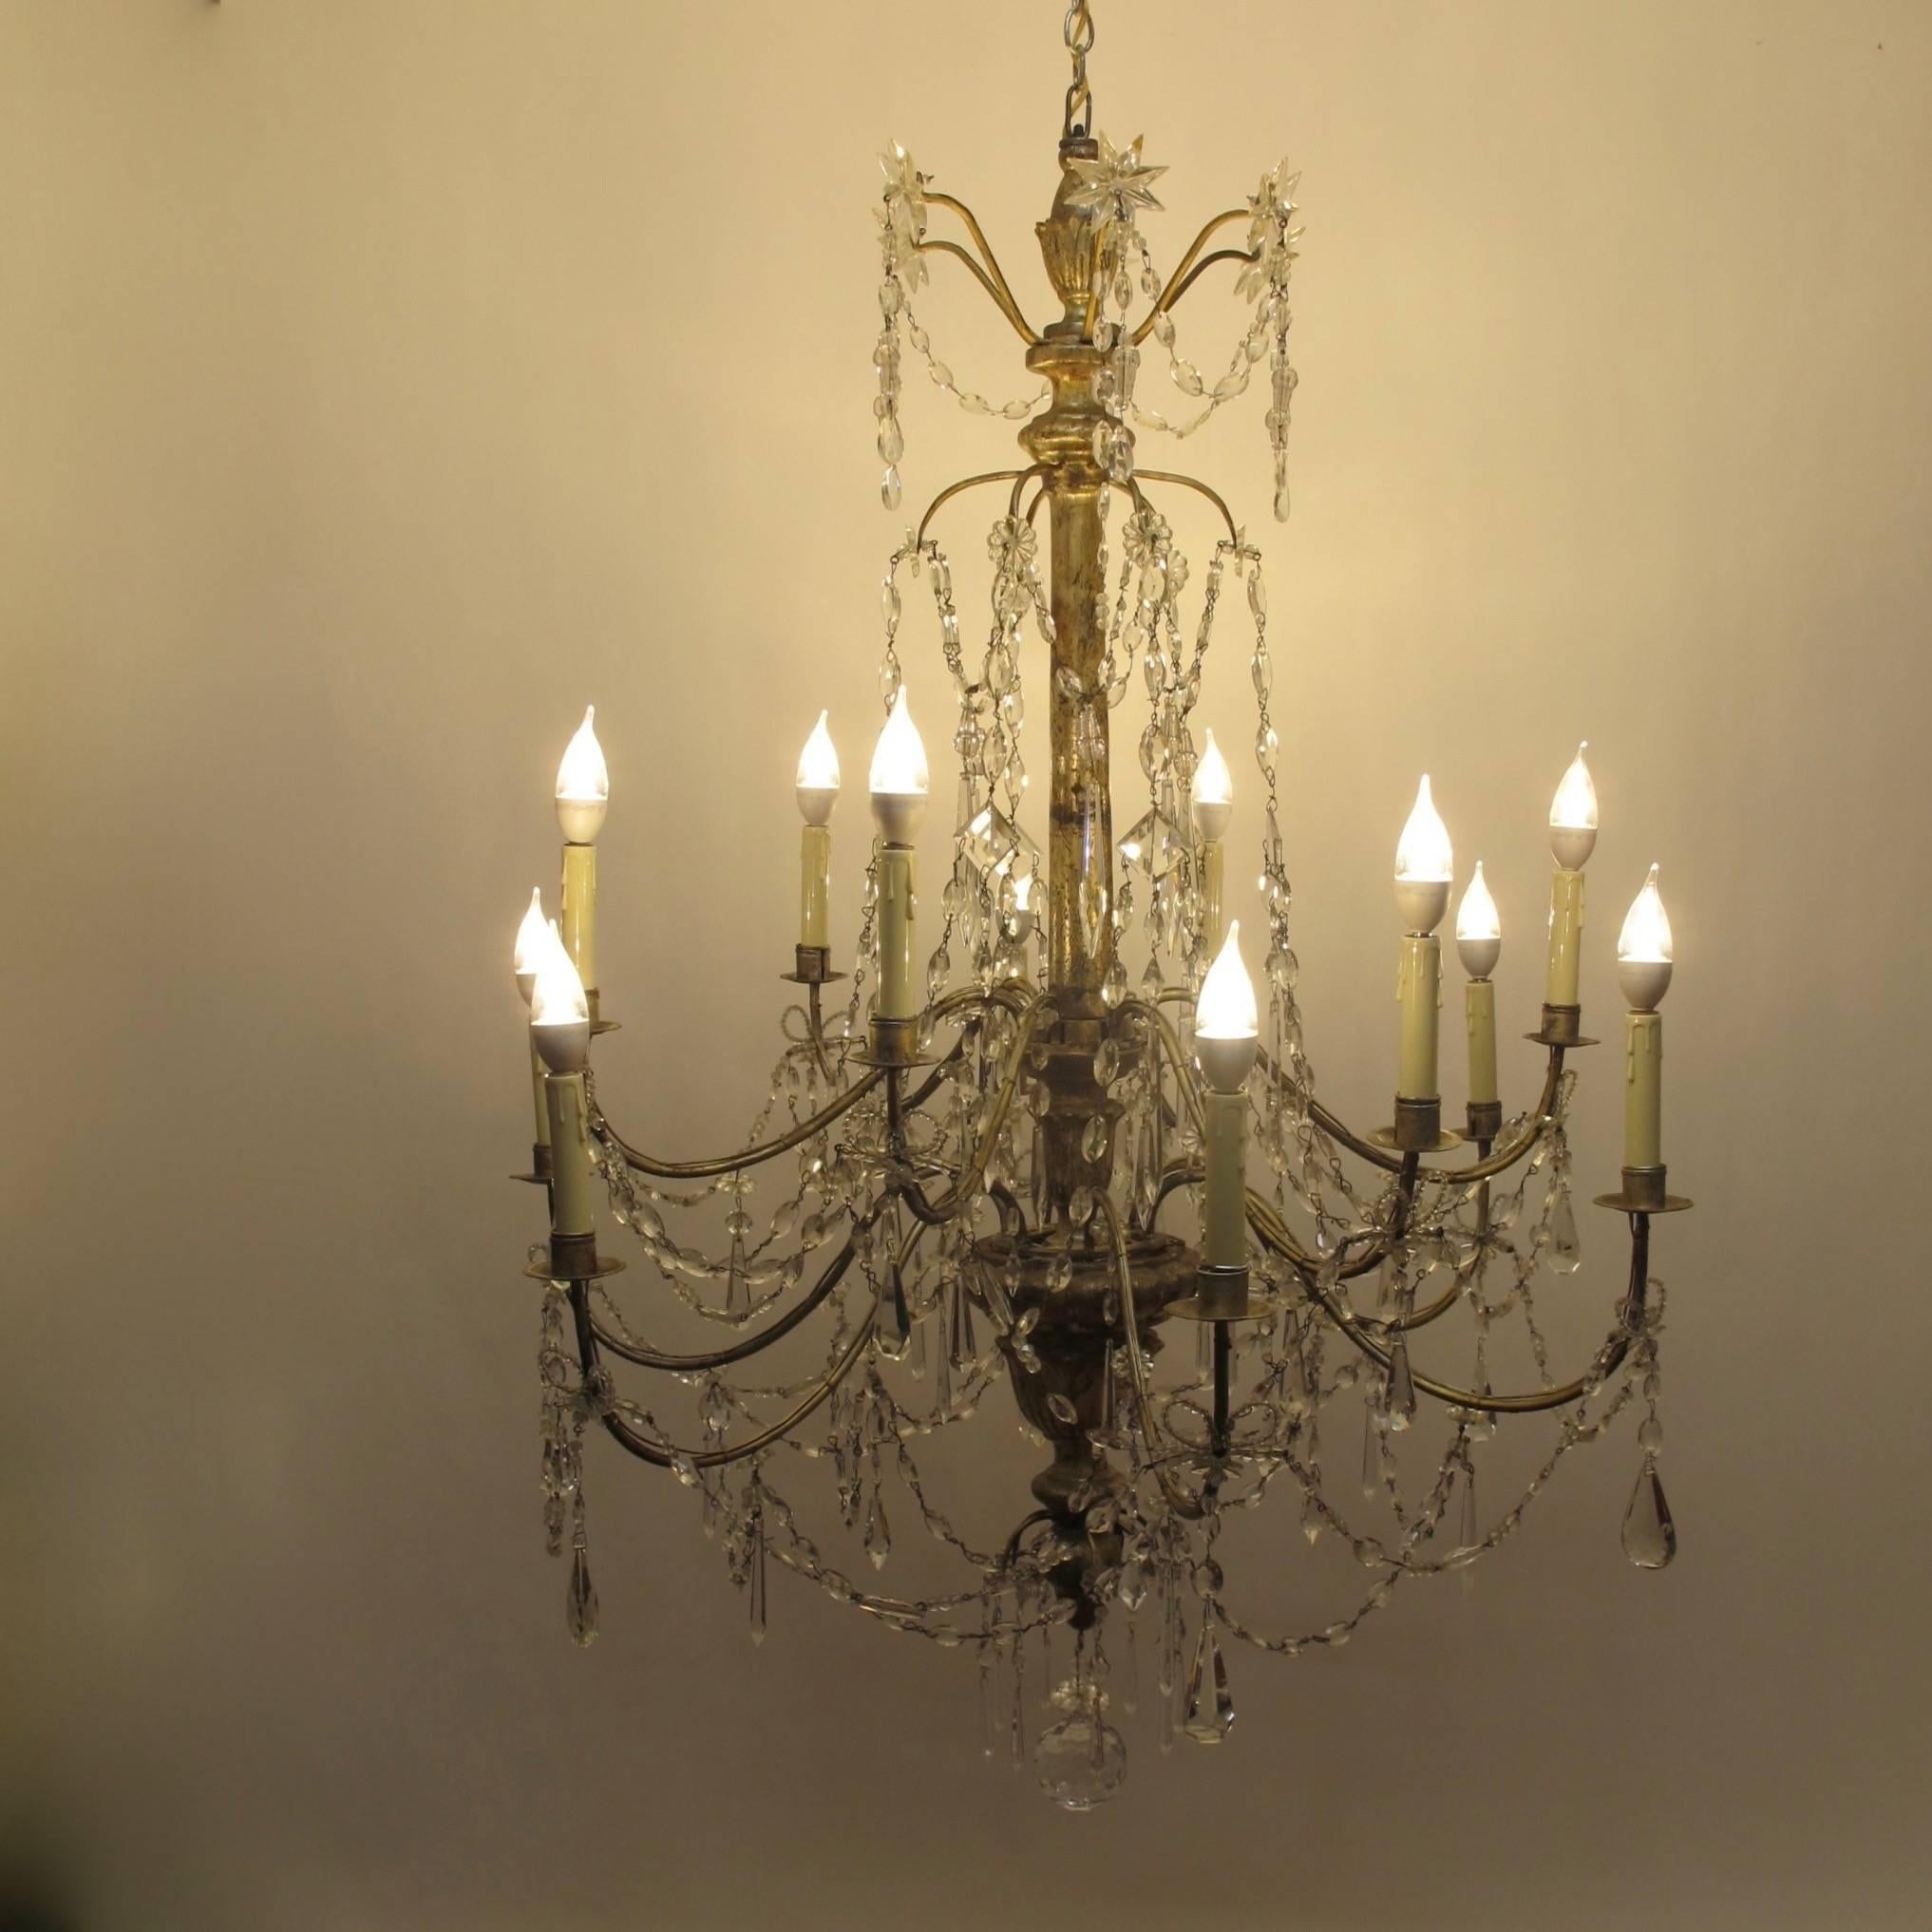 Exceptionnel lustre italien à douze bras de lumière à bougie du 18e siècle ou du début du 19e siècle. Cadre en bois et fer argenté avec des pendentifs en cristal et des guirlandes en verre.
Récemment re-conditionné et électrifié.